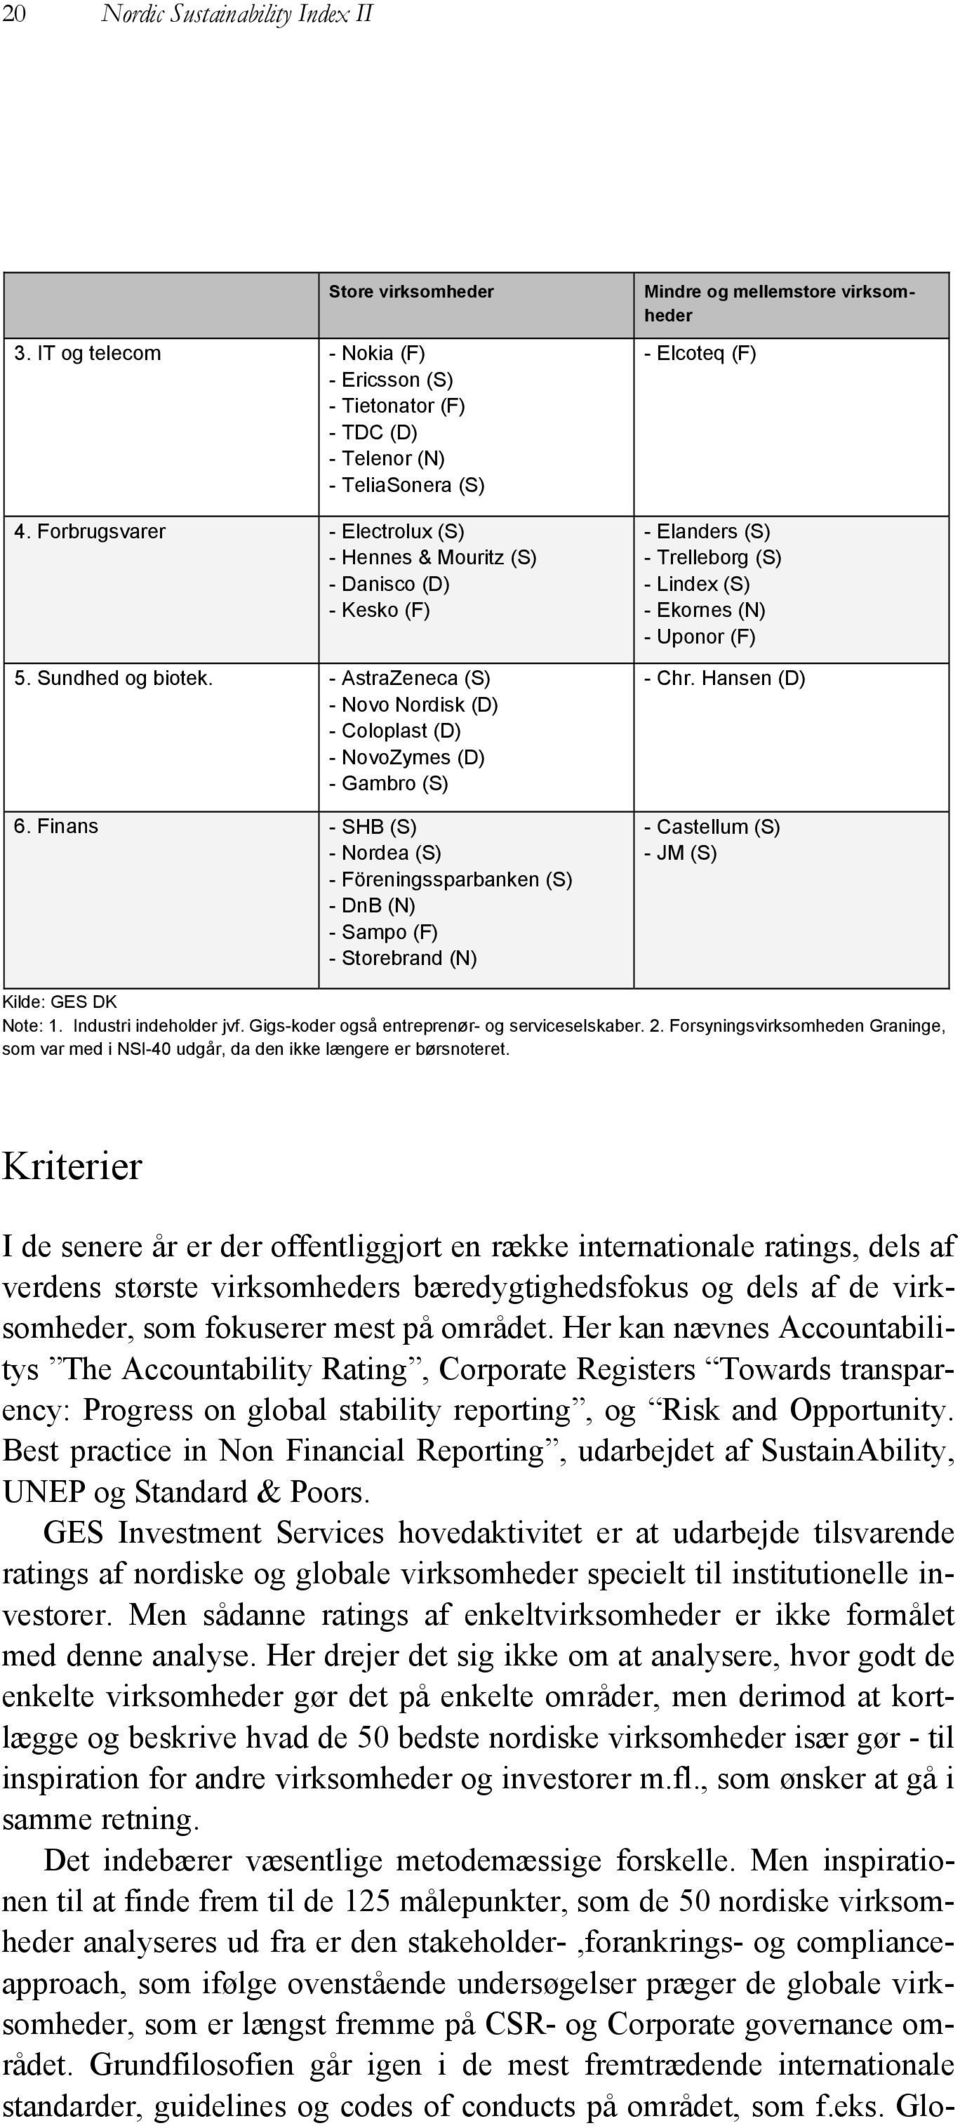 Finans - SHB (S) - Nordea (S) - Föreningssparbanken (S) - DnB (N) - Sampo (F) - Storebrand (N) Mindre og mellemstore virksomheder - Elcoteq (F) - Elanders (S) - Trelleborg (S) - Lindex (S) - Ekornes